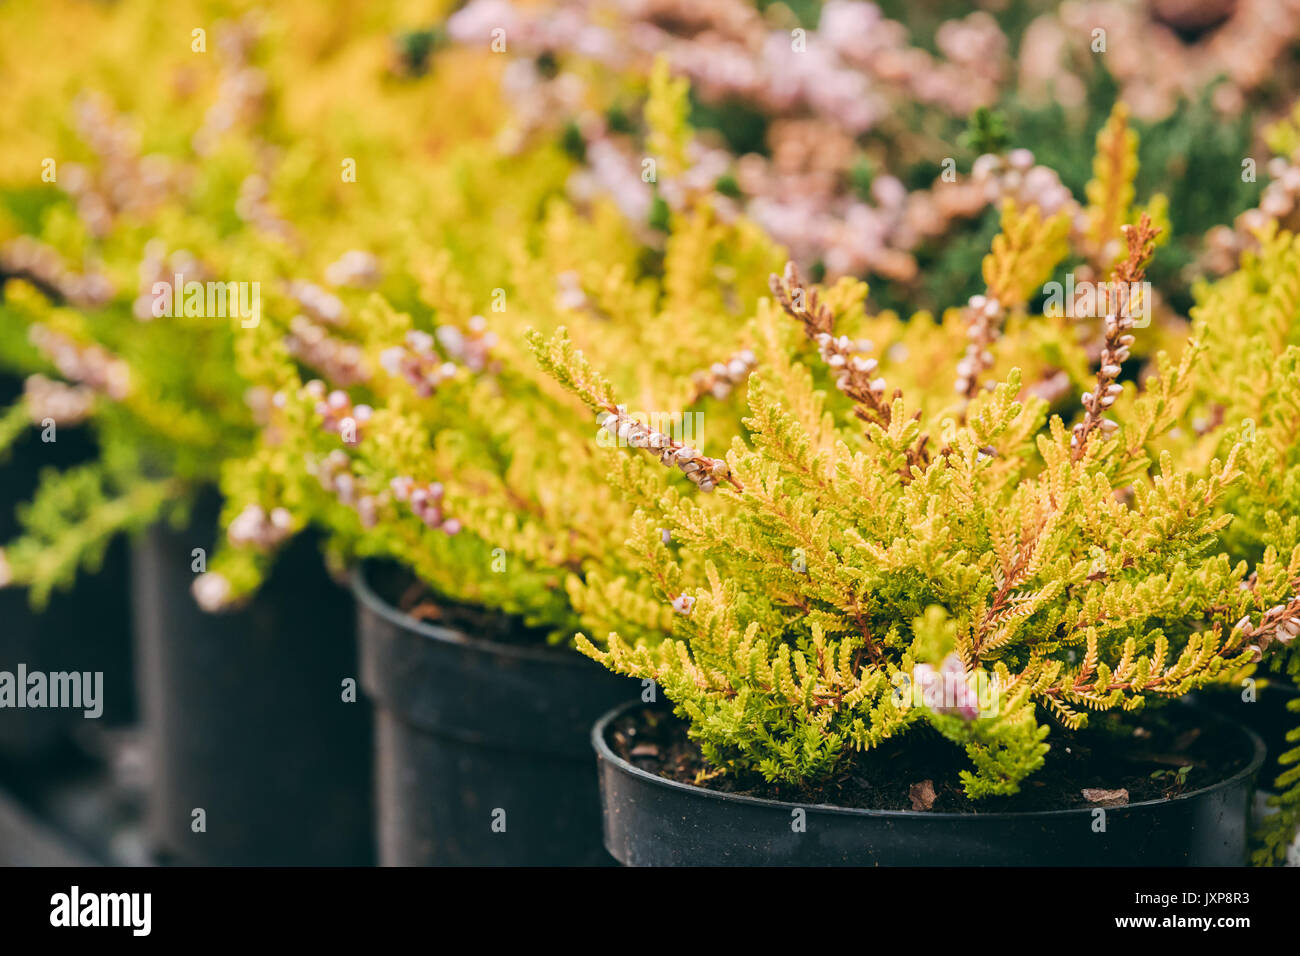 Bush von Calluna Pflanze im Topf in Blumenladen Markt. Stockfoto